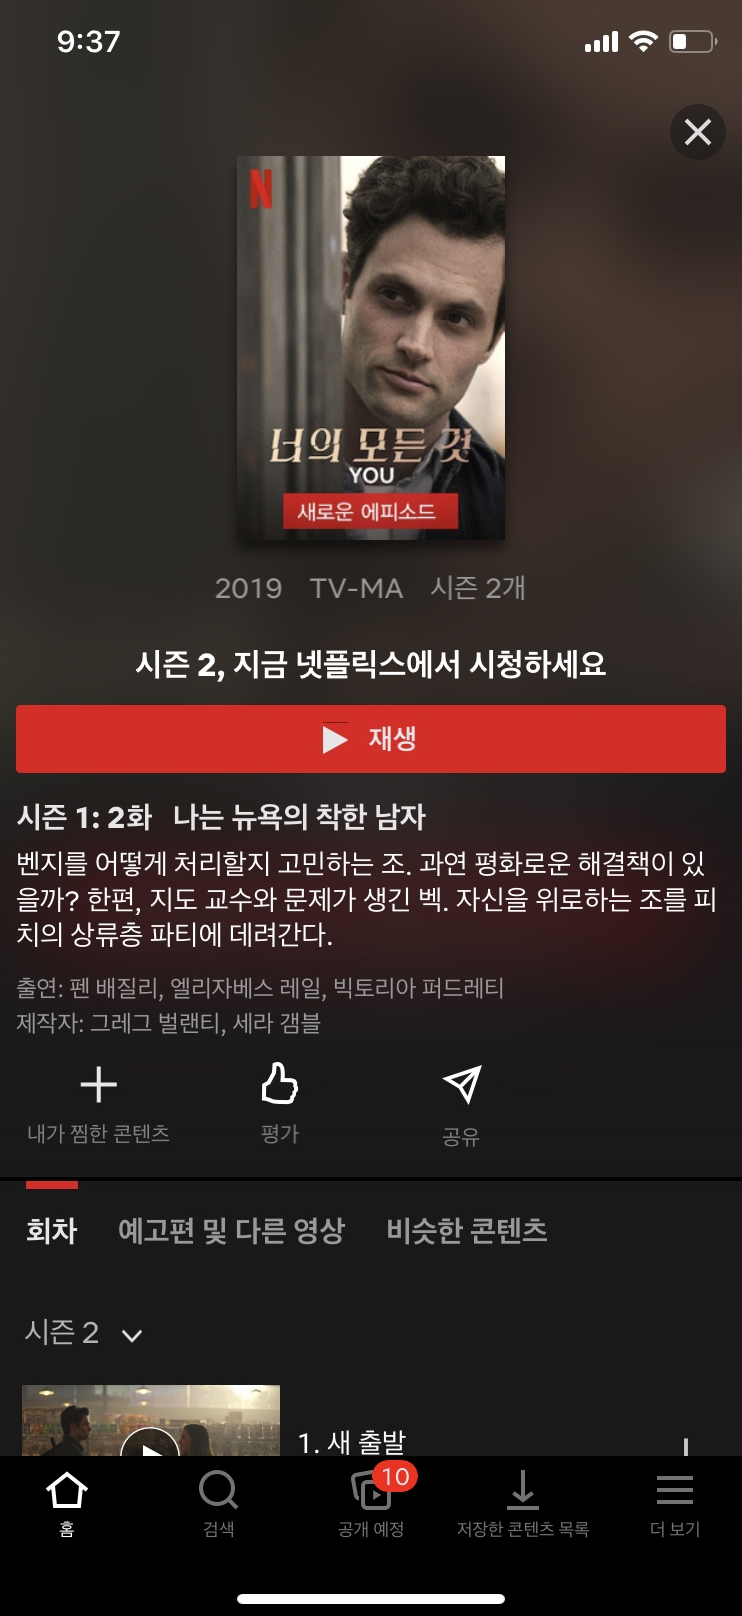 [넷플릭스 리뷰] You 댁의 모든 것 시즌2. 충격의 연속임. 대박